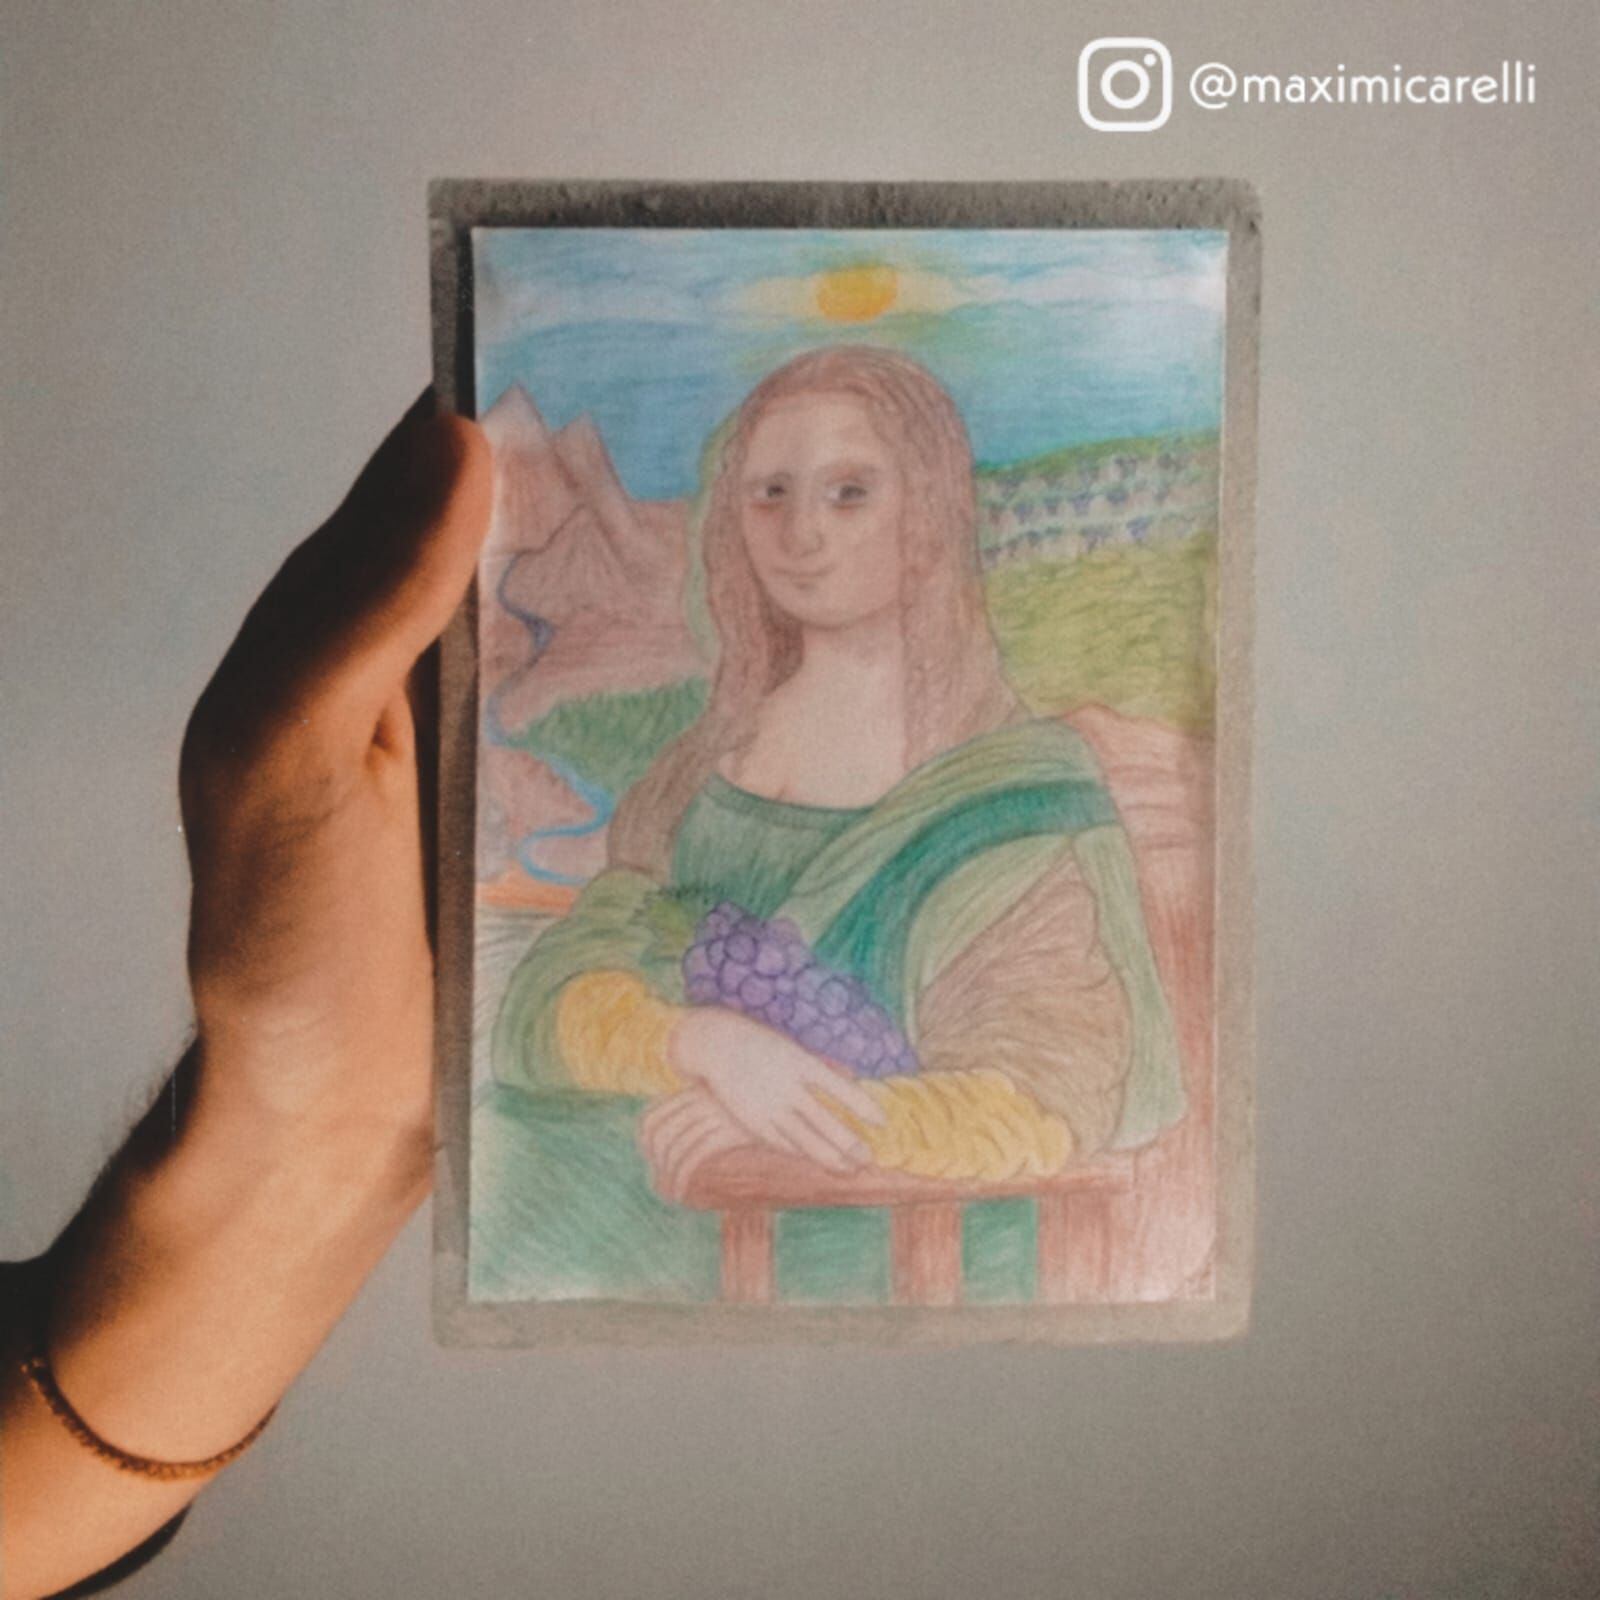 La Mona Lisa, de Leonardo, recreada en un paisaje mendocino, con el sol característico y un racimo de uva.